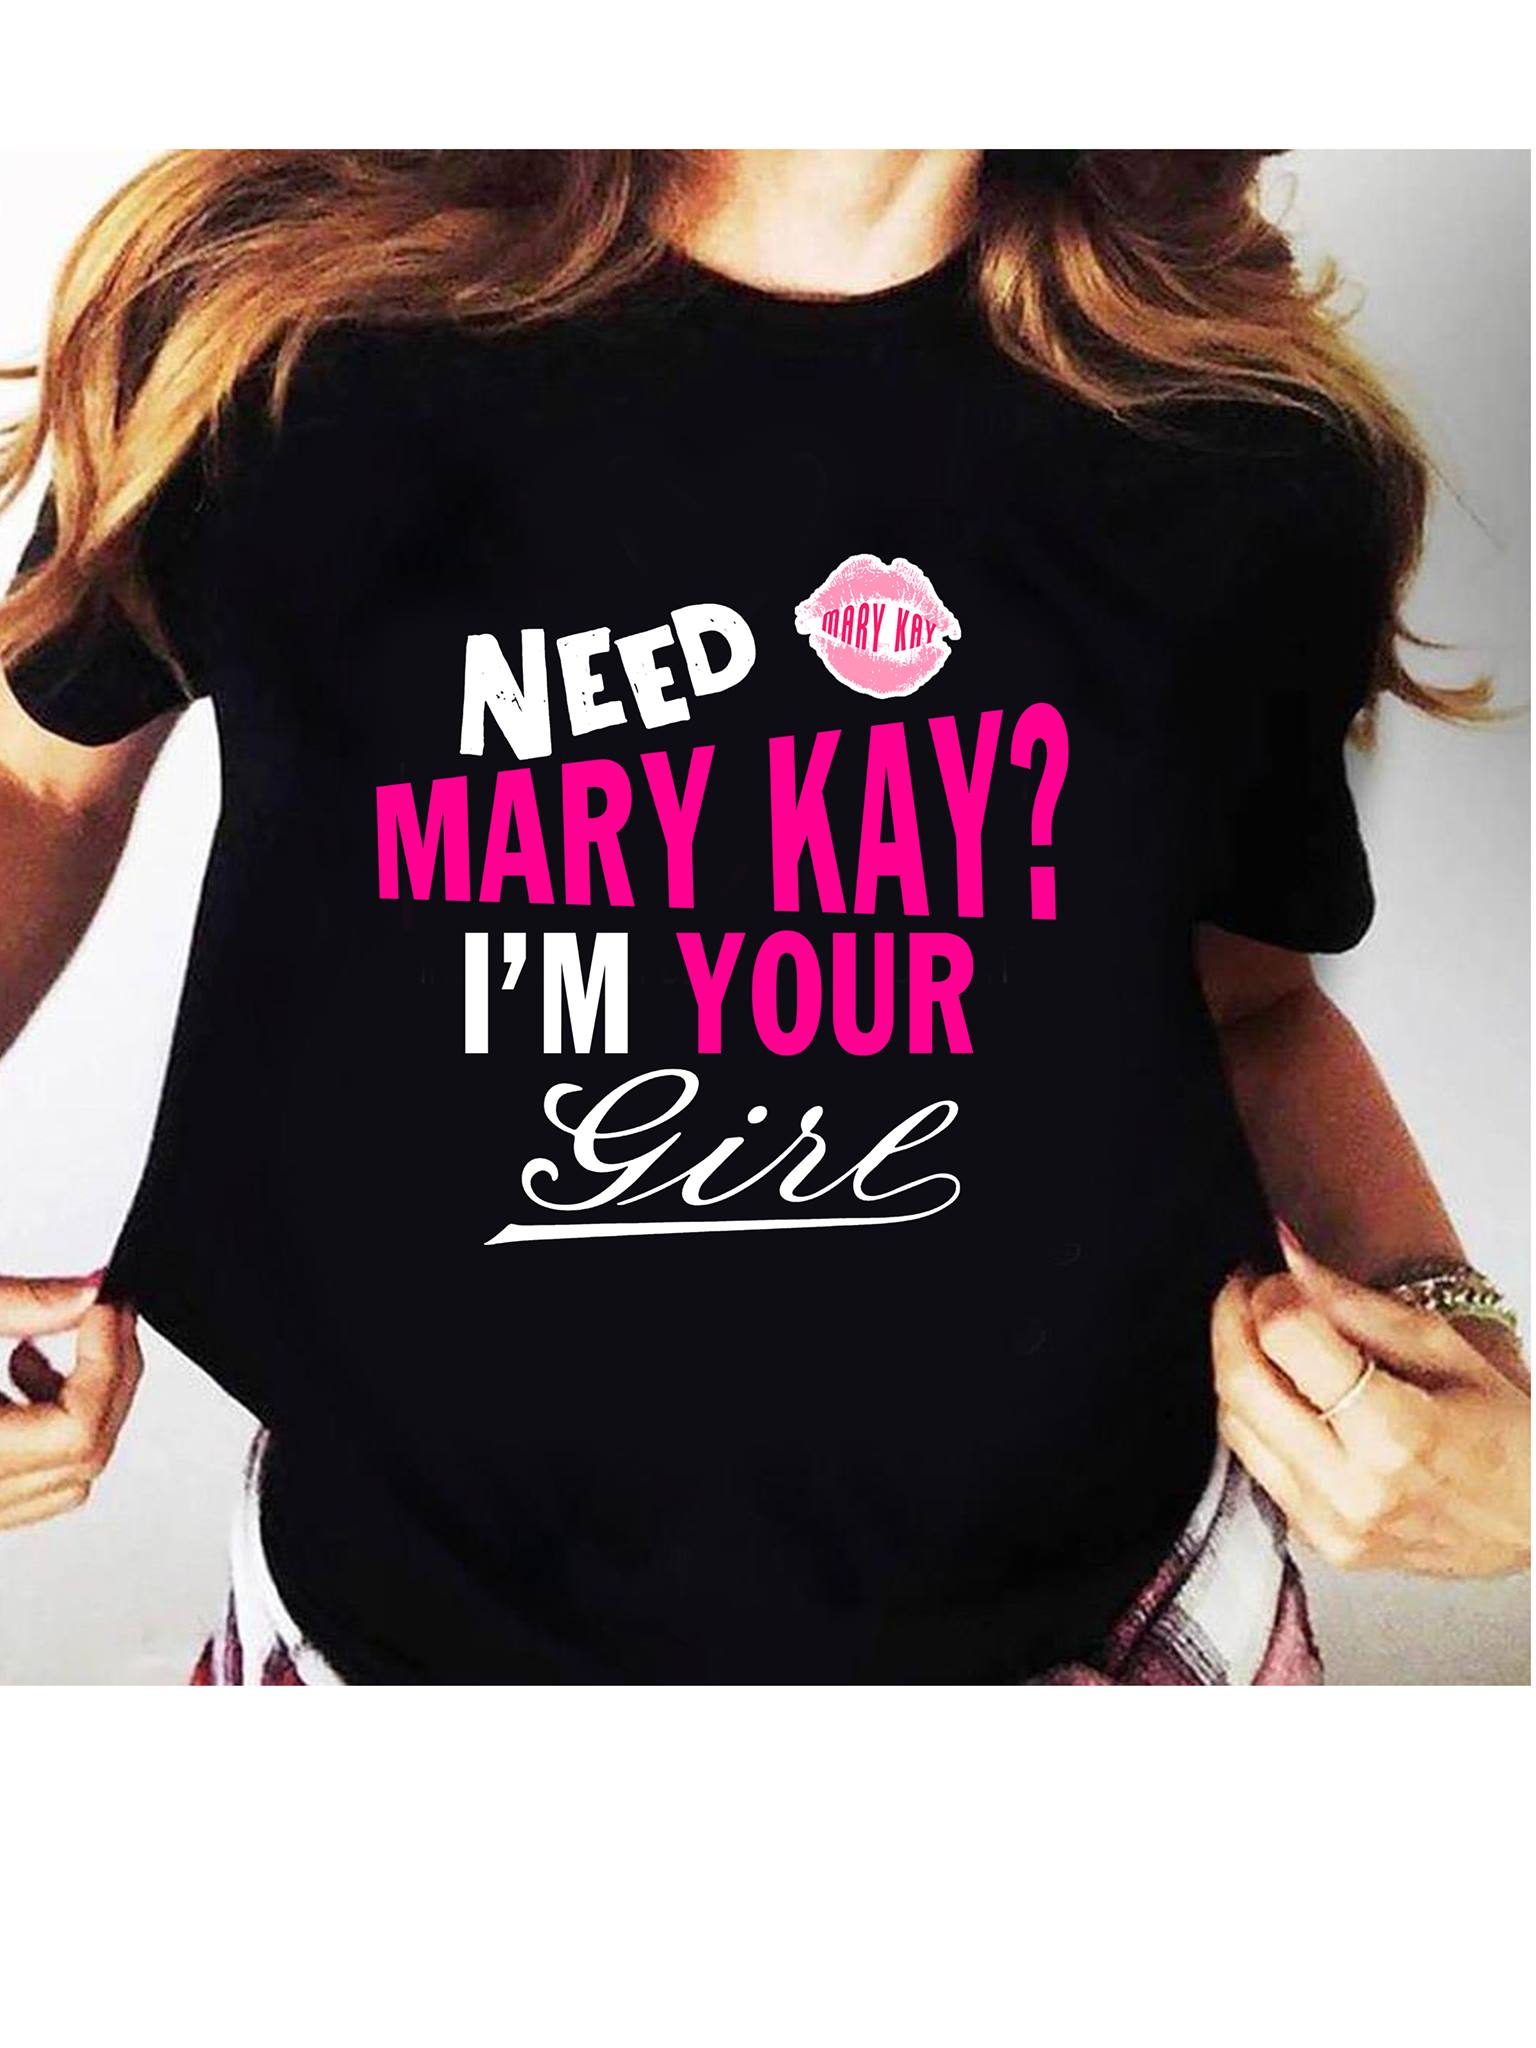 Need mary kay I'm your girl - Mary Kay girl